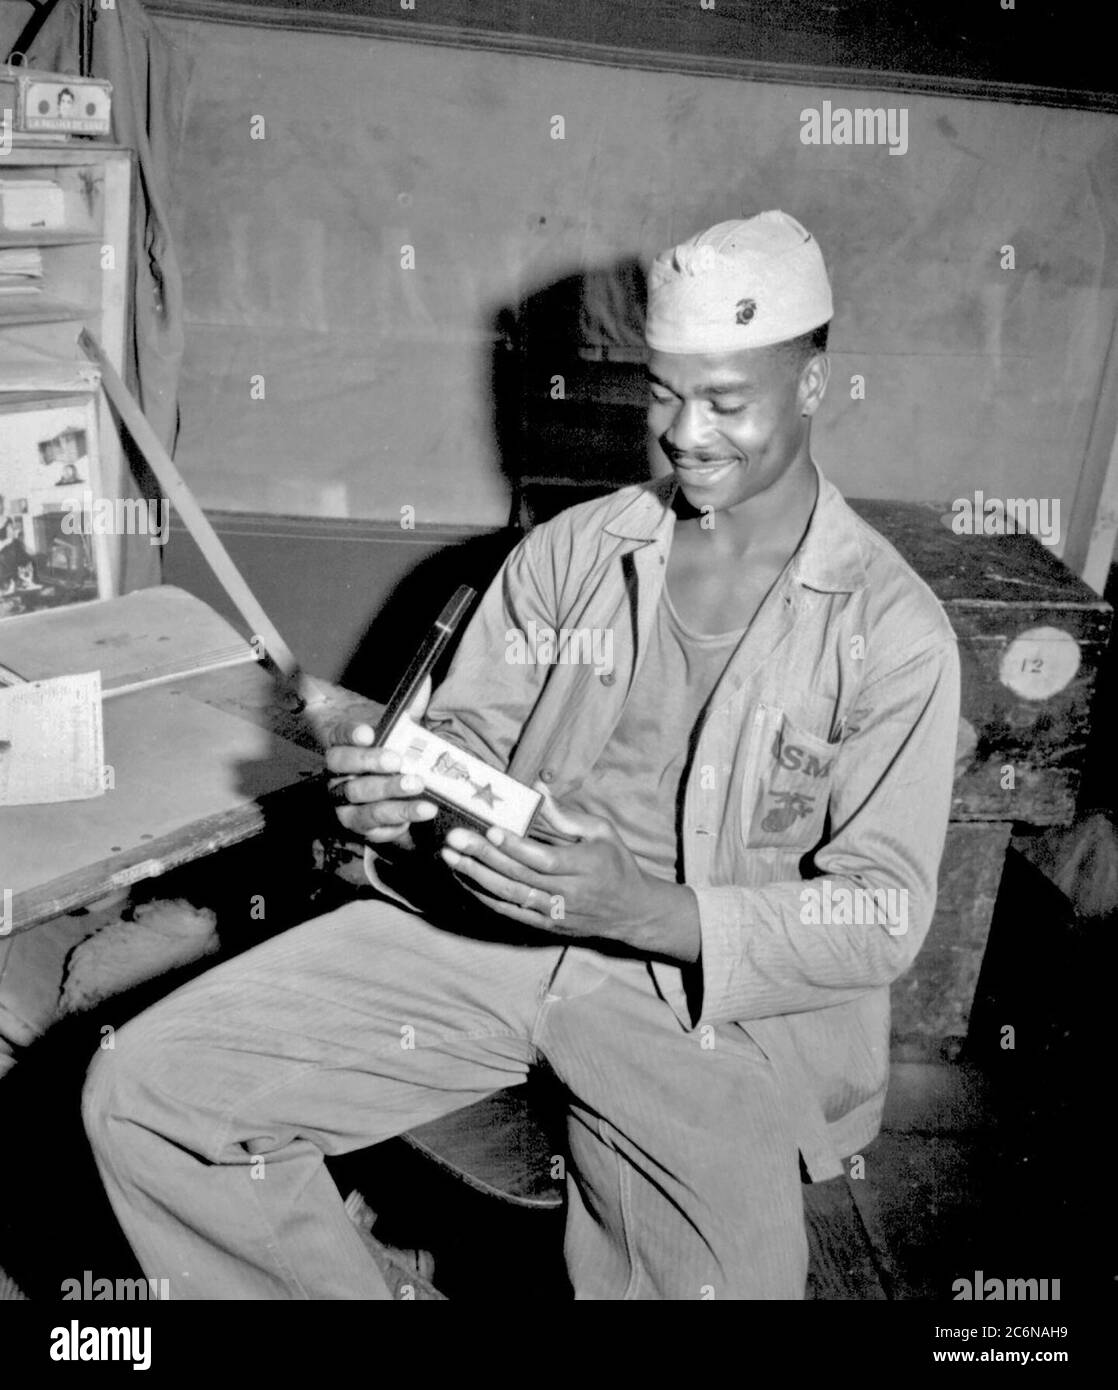 PFC. Luther Woodward, membre de la 4e compagnie de munitions, lui admire l'étoile de bronze récompensée pour son courage, son initiative et sa ruse de combat. Le prix a été ensuite mis à niveau vers le Silver Star, le 17 avril 1945. (Photo par Cpl. Irving Deutch) Banque D'Images